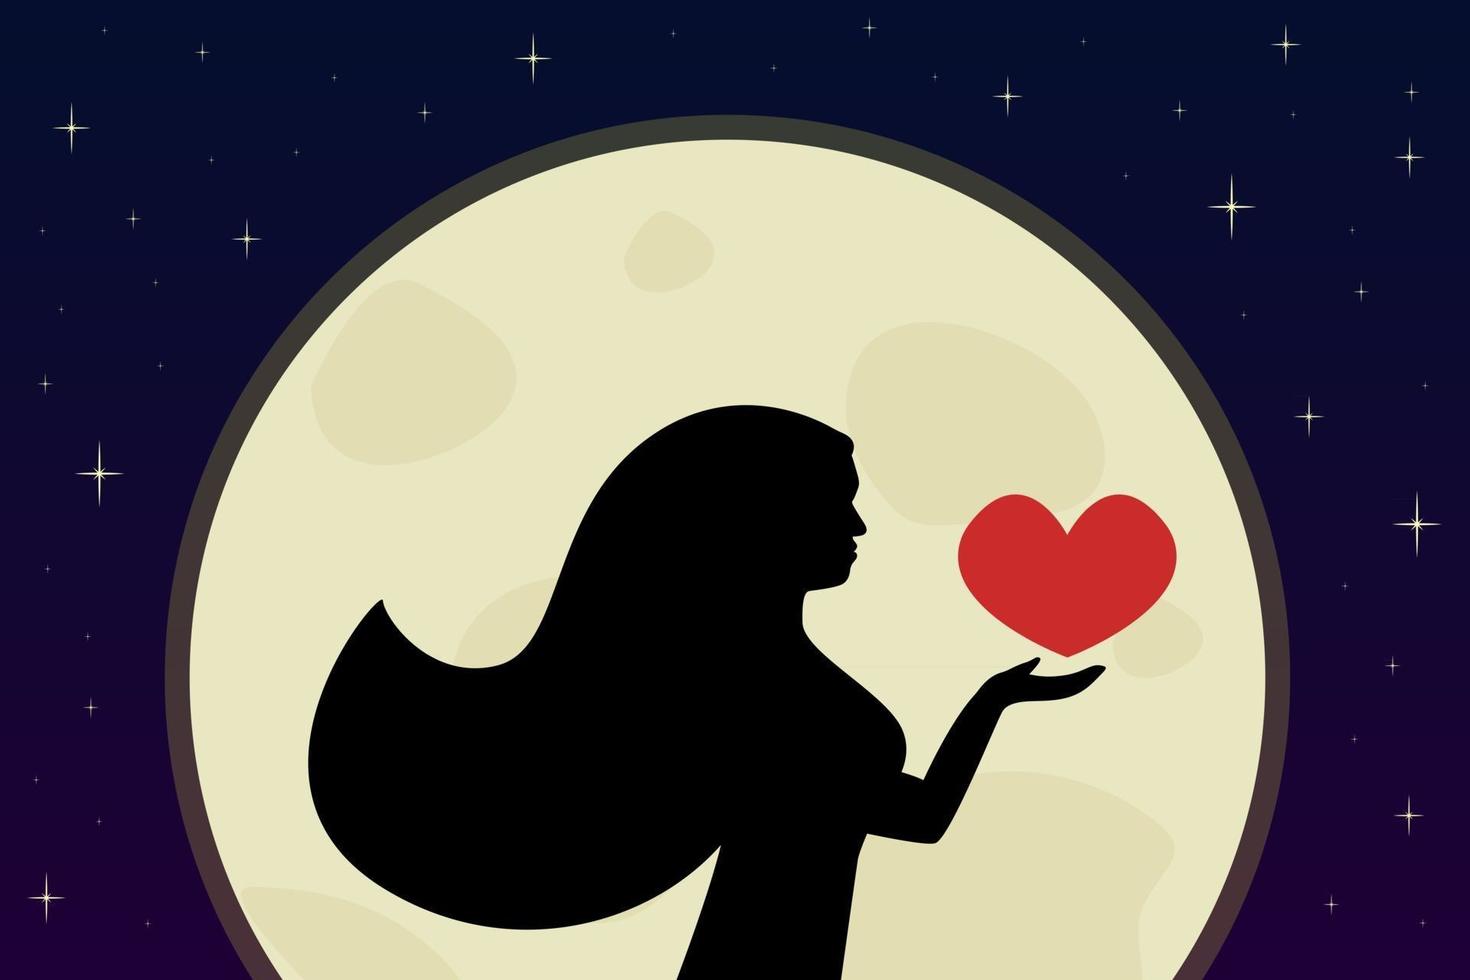 vrouwelijk silhouet in het maanlicht jonge vrouw houdt rood hart in haar hand volle maan en sterren op de achtergrond vectorillustratie vector